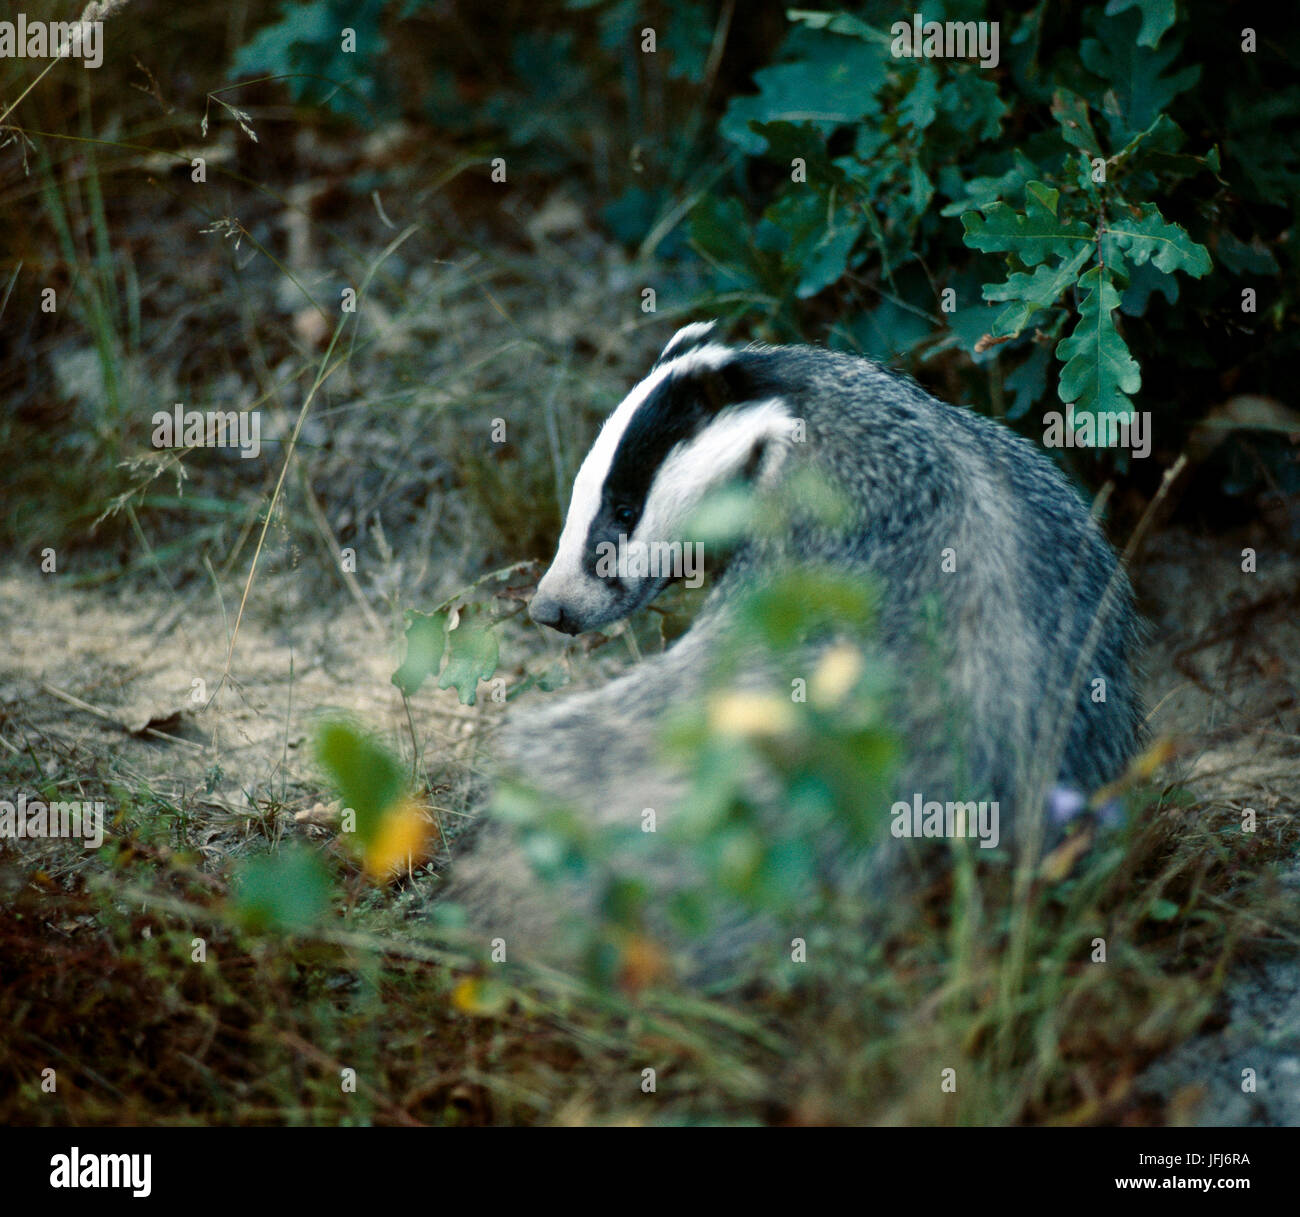 Eurasian badger, Meles meles Stock Photo